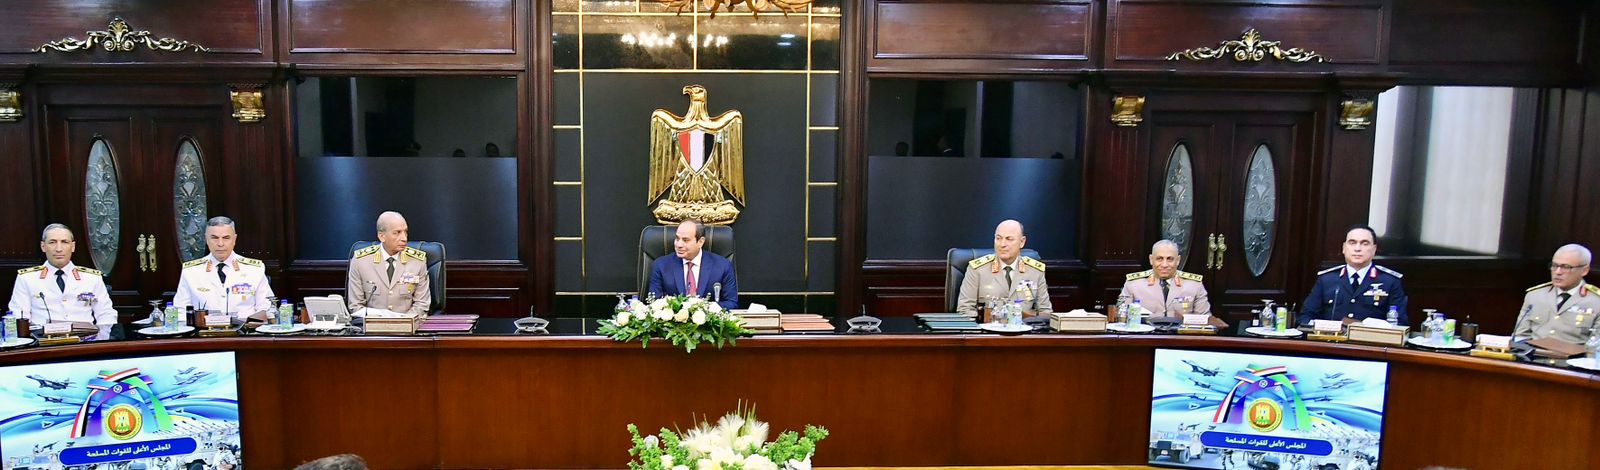 ترأس الرئيس السيسي اجتماع المجلس الأعلى للقوات المسلحة